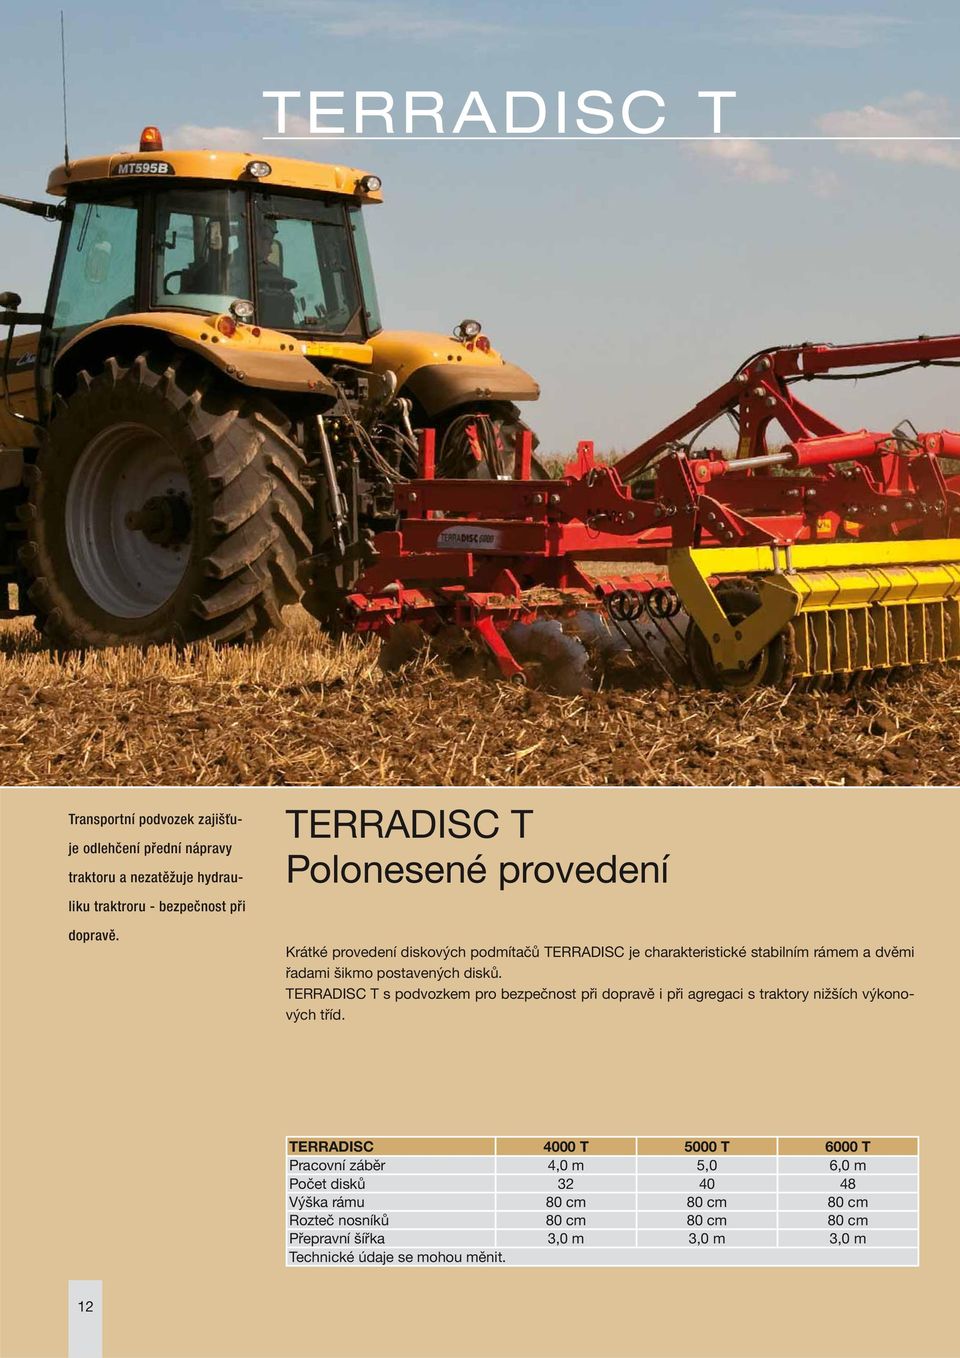 disků. TERRADISC T s podvozkem pro bezpečnost při dopravě i při agregaci s traktory nižších výkonových tříd.